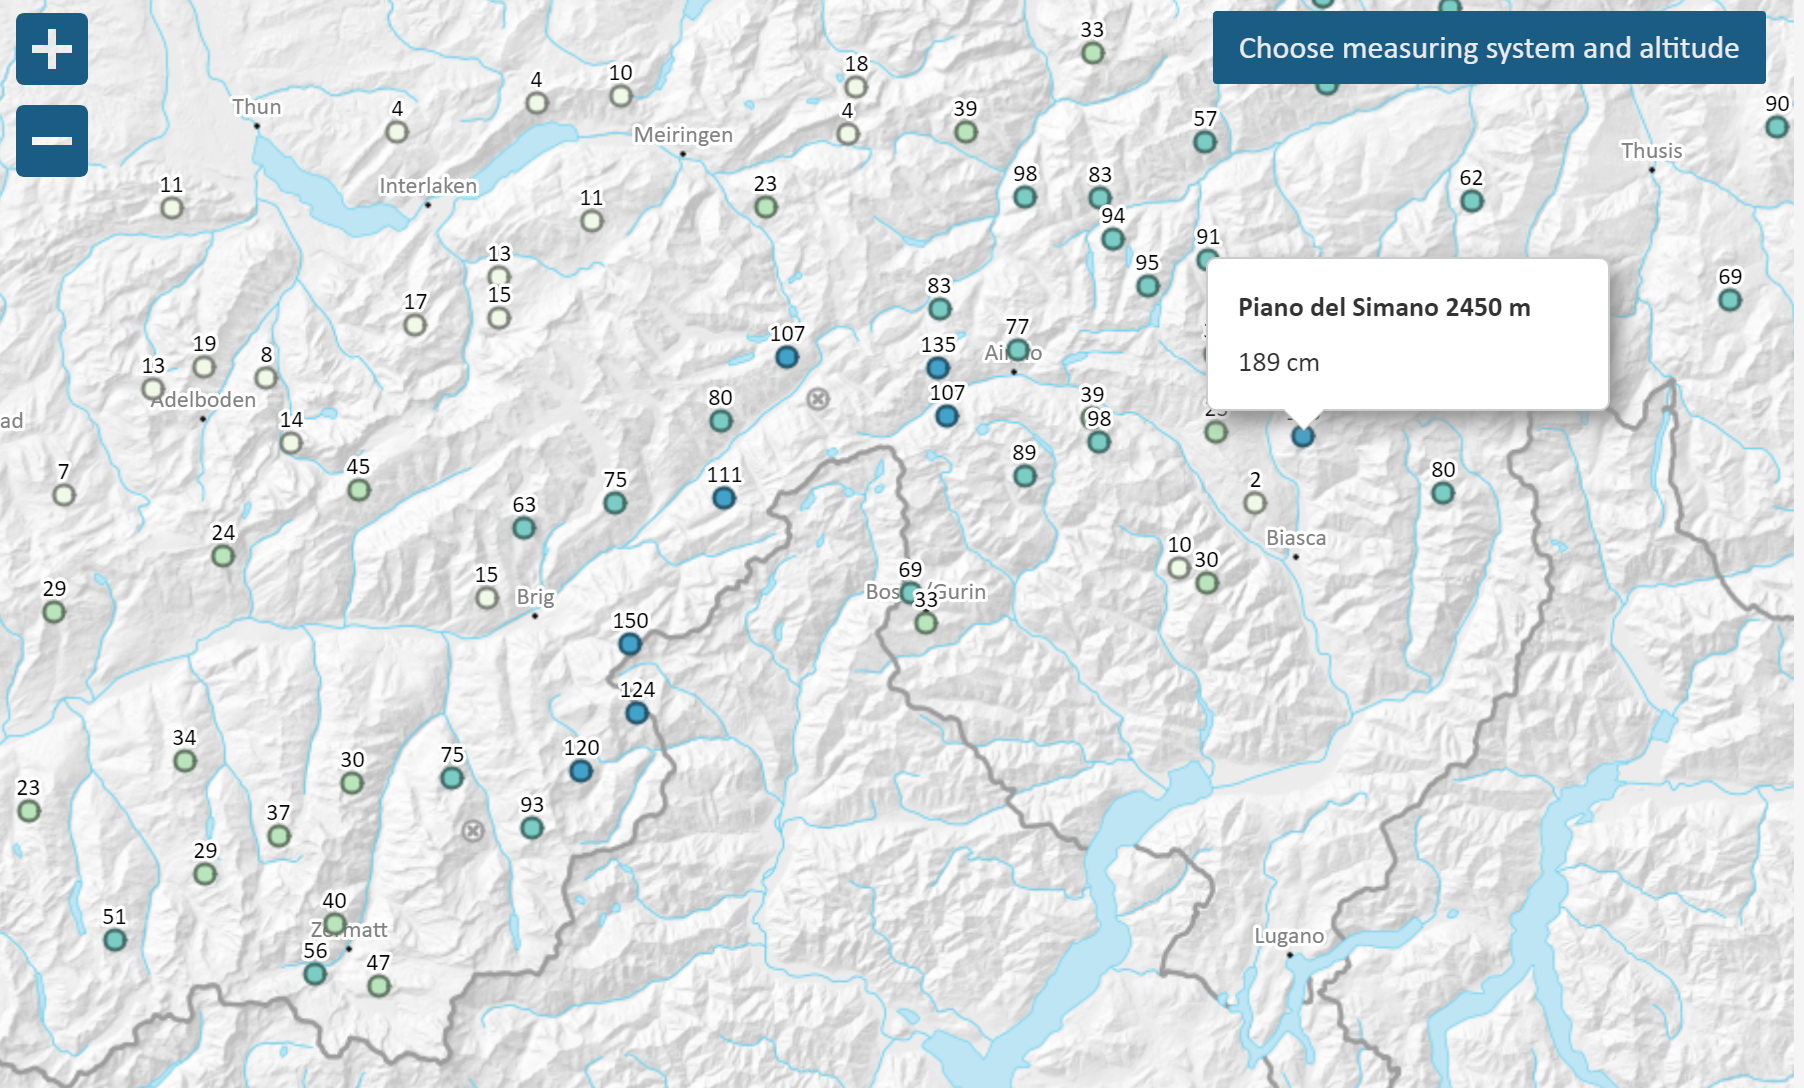 Mérőállomások Svájc déli részén (Térkép: Svájci Lavinakutató Intézet)